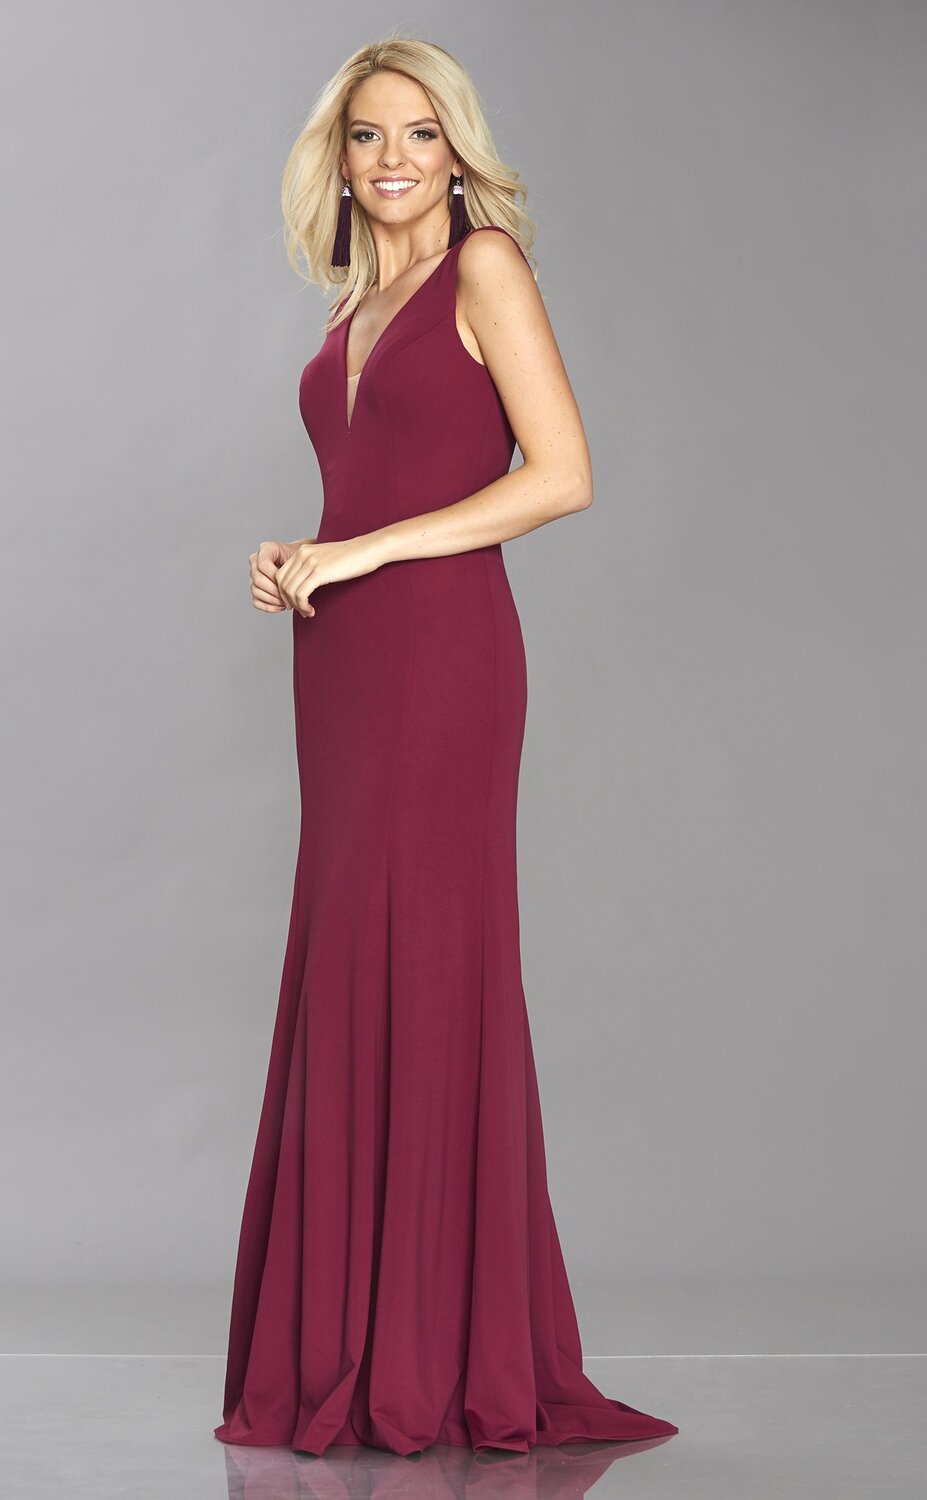 Zara Prom Dress